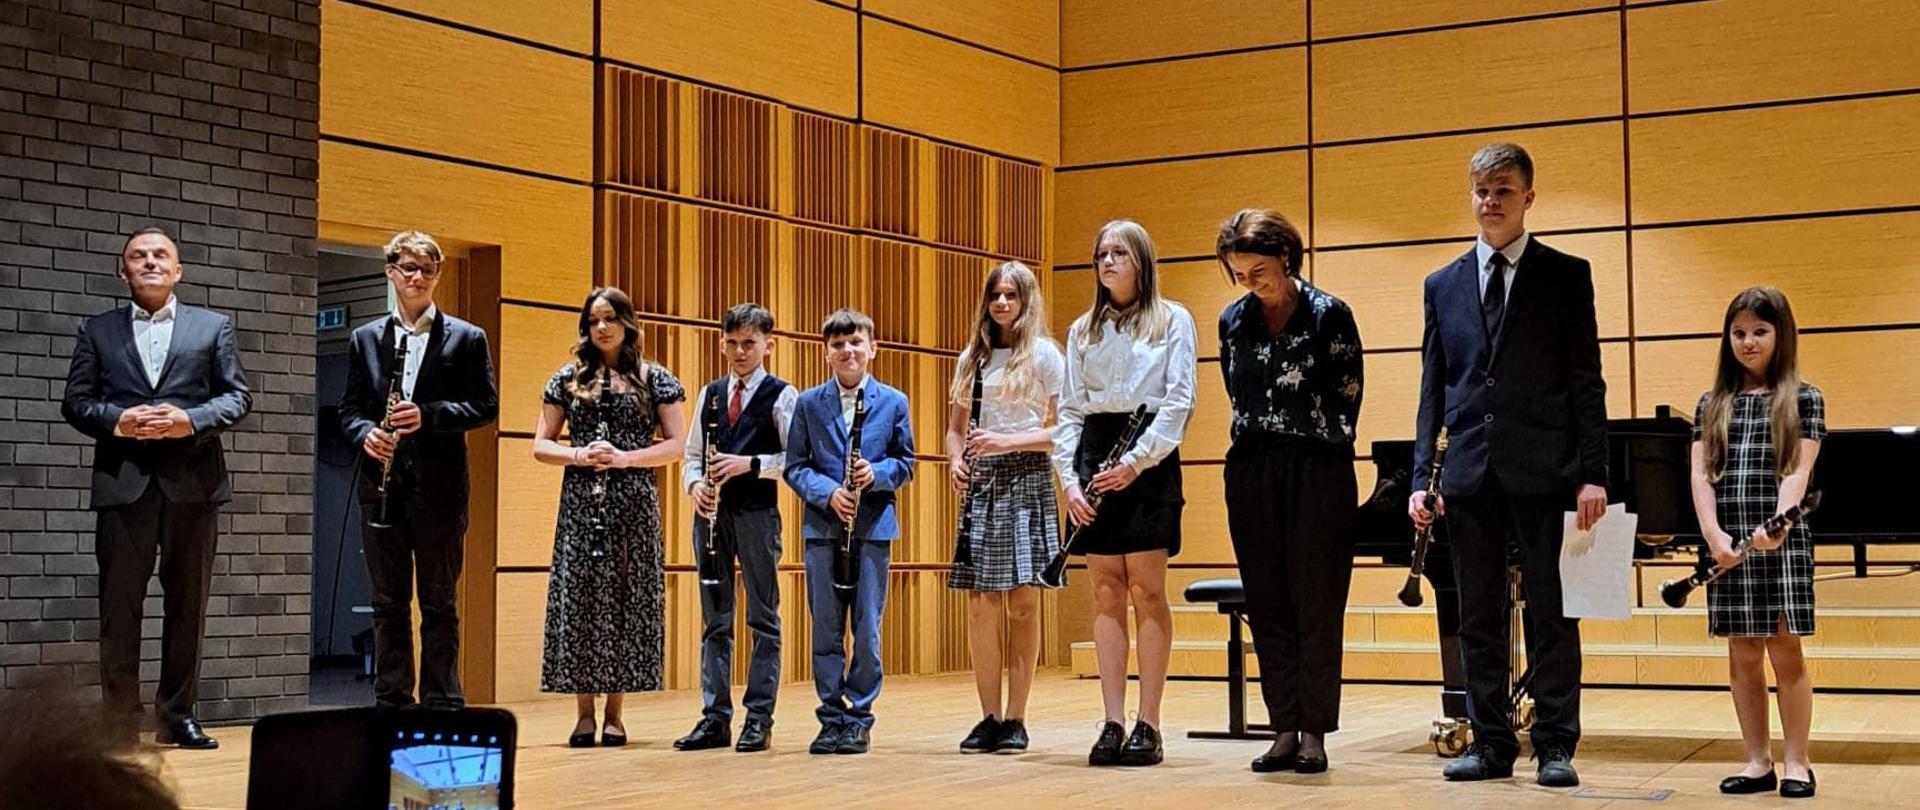 Uczniowie wraz z nauczycielami stojący w jednym rzędzie na scenie sali koncertowej. Każdy z uczniów trzyma klarnet. W tle, po prawej stronie widoczny jest fortepian. Z sufitu zwisają lampy.